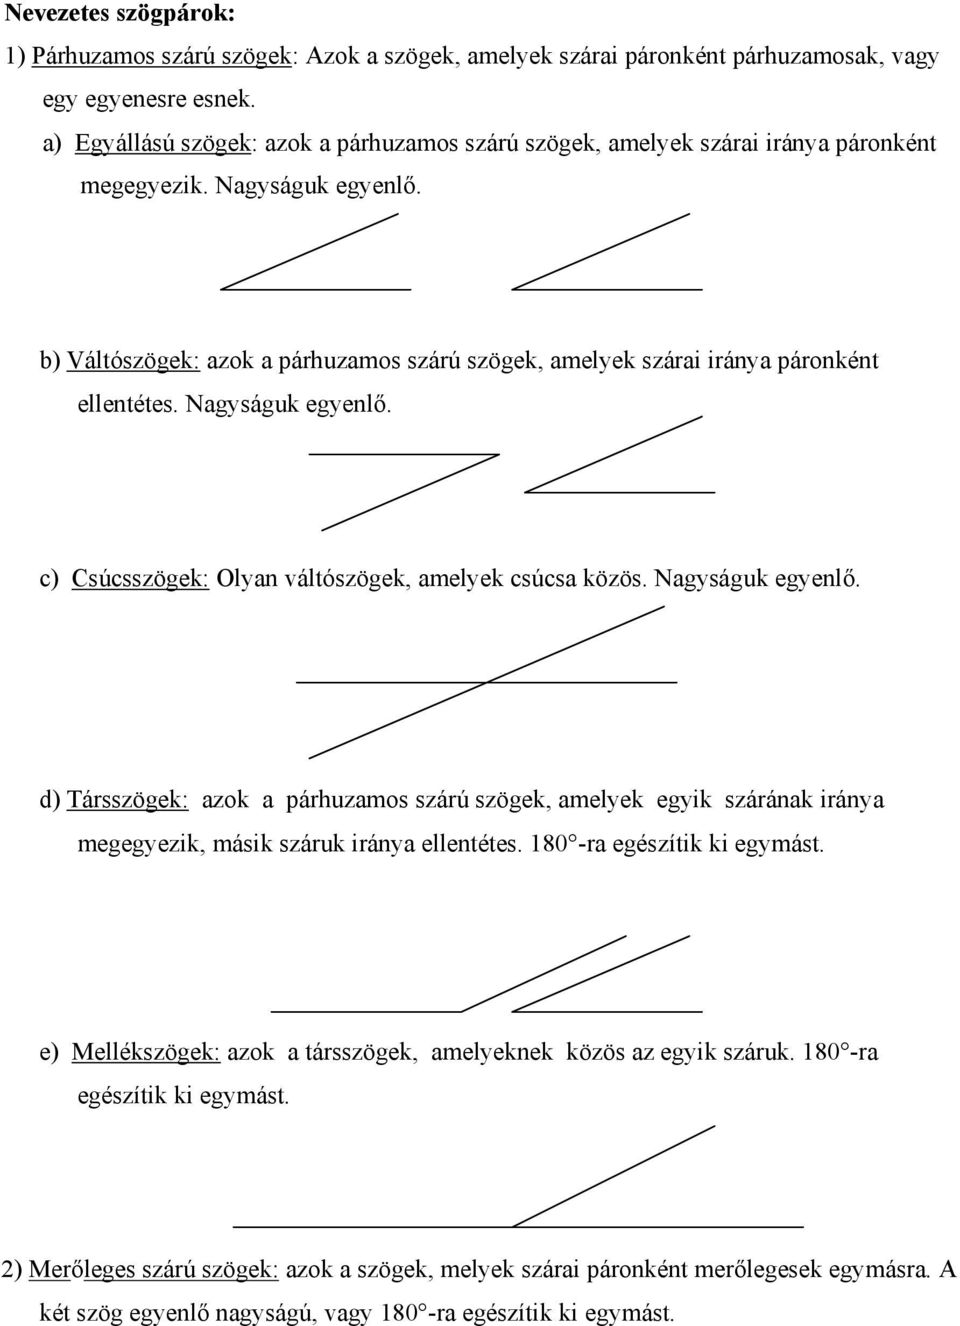 b) Váltószögek: azok a párhuzamos szárú szögek, amelyek szárai iránya páronként ellentétes. Nagyságuk egyenlő.